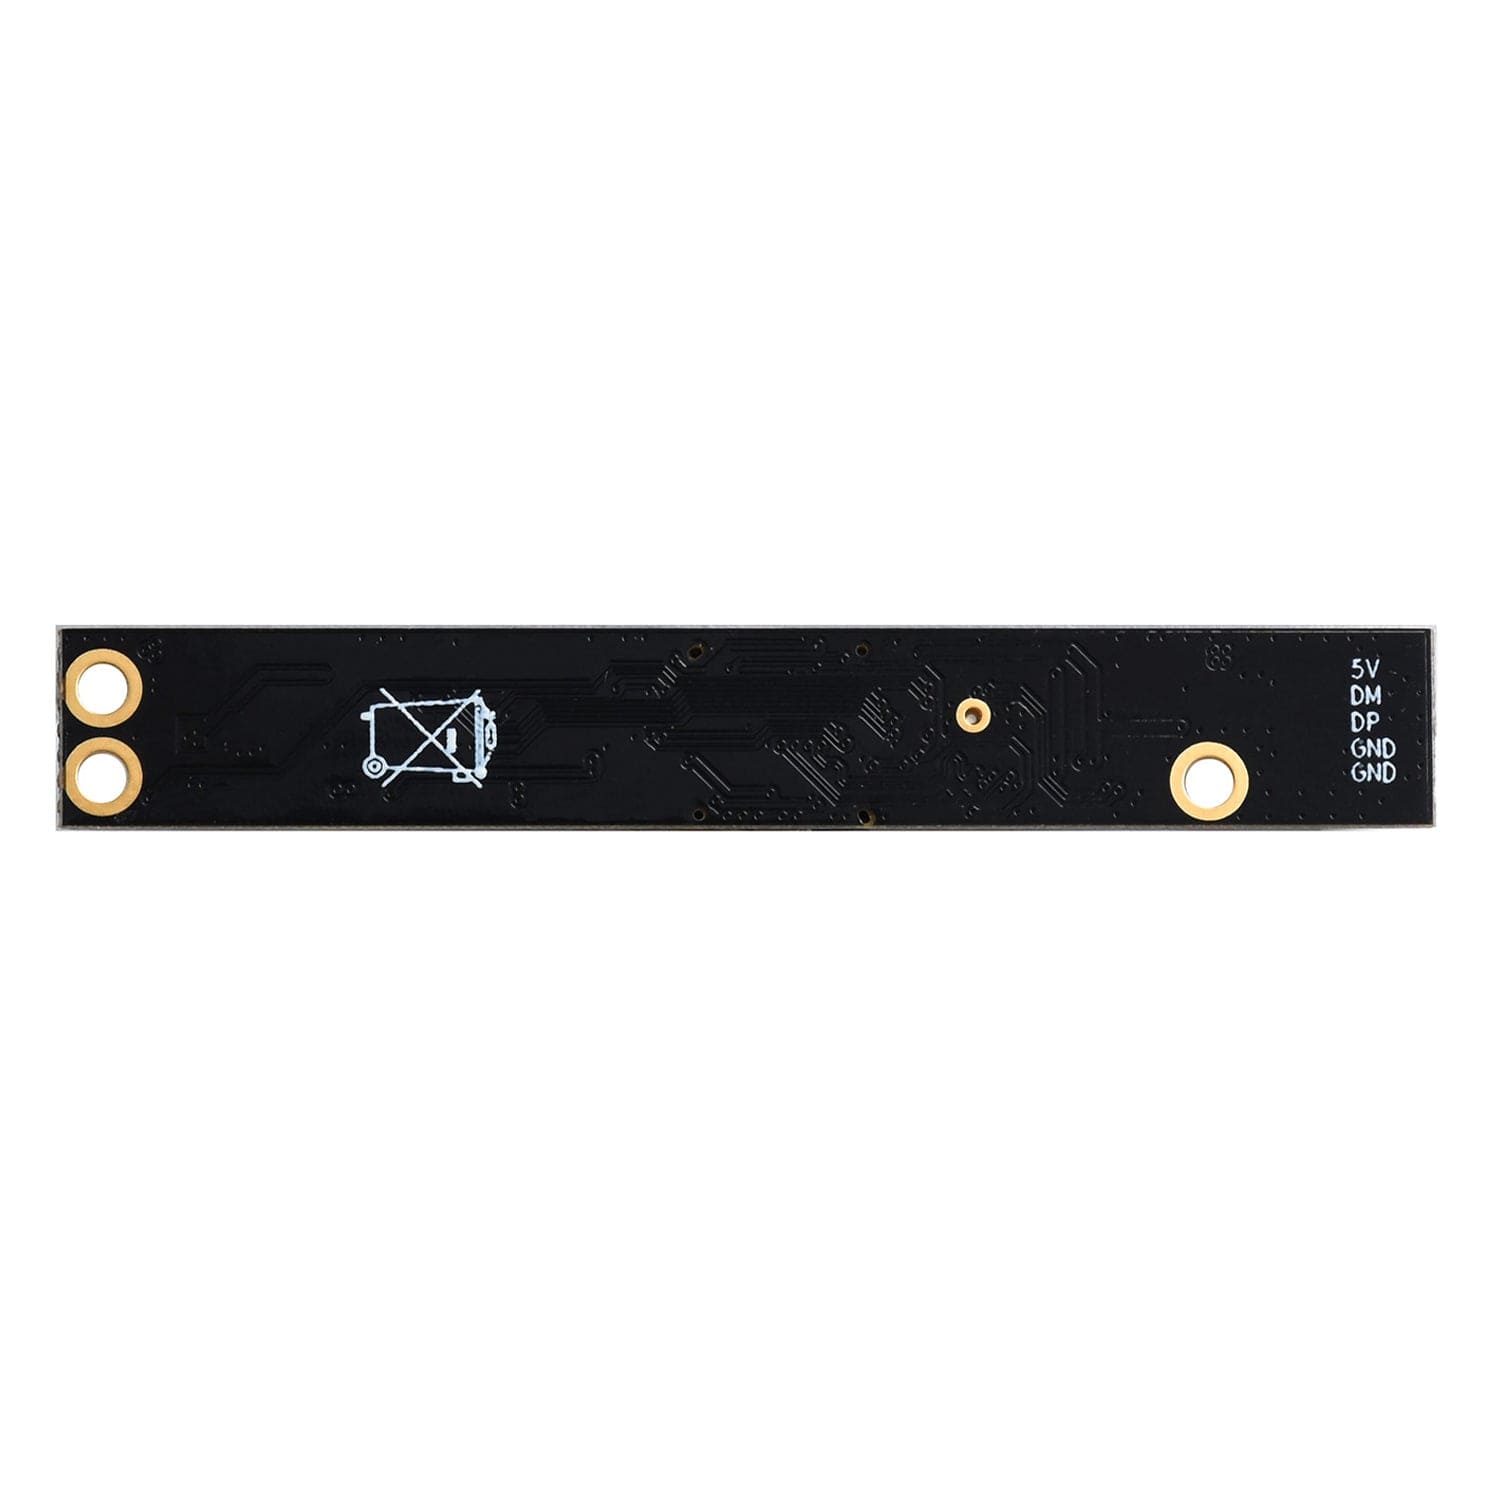 5MP OV5640 Auto-Focus USB Camera Board - The Pi Hut